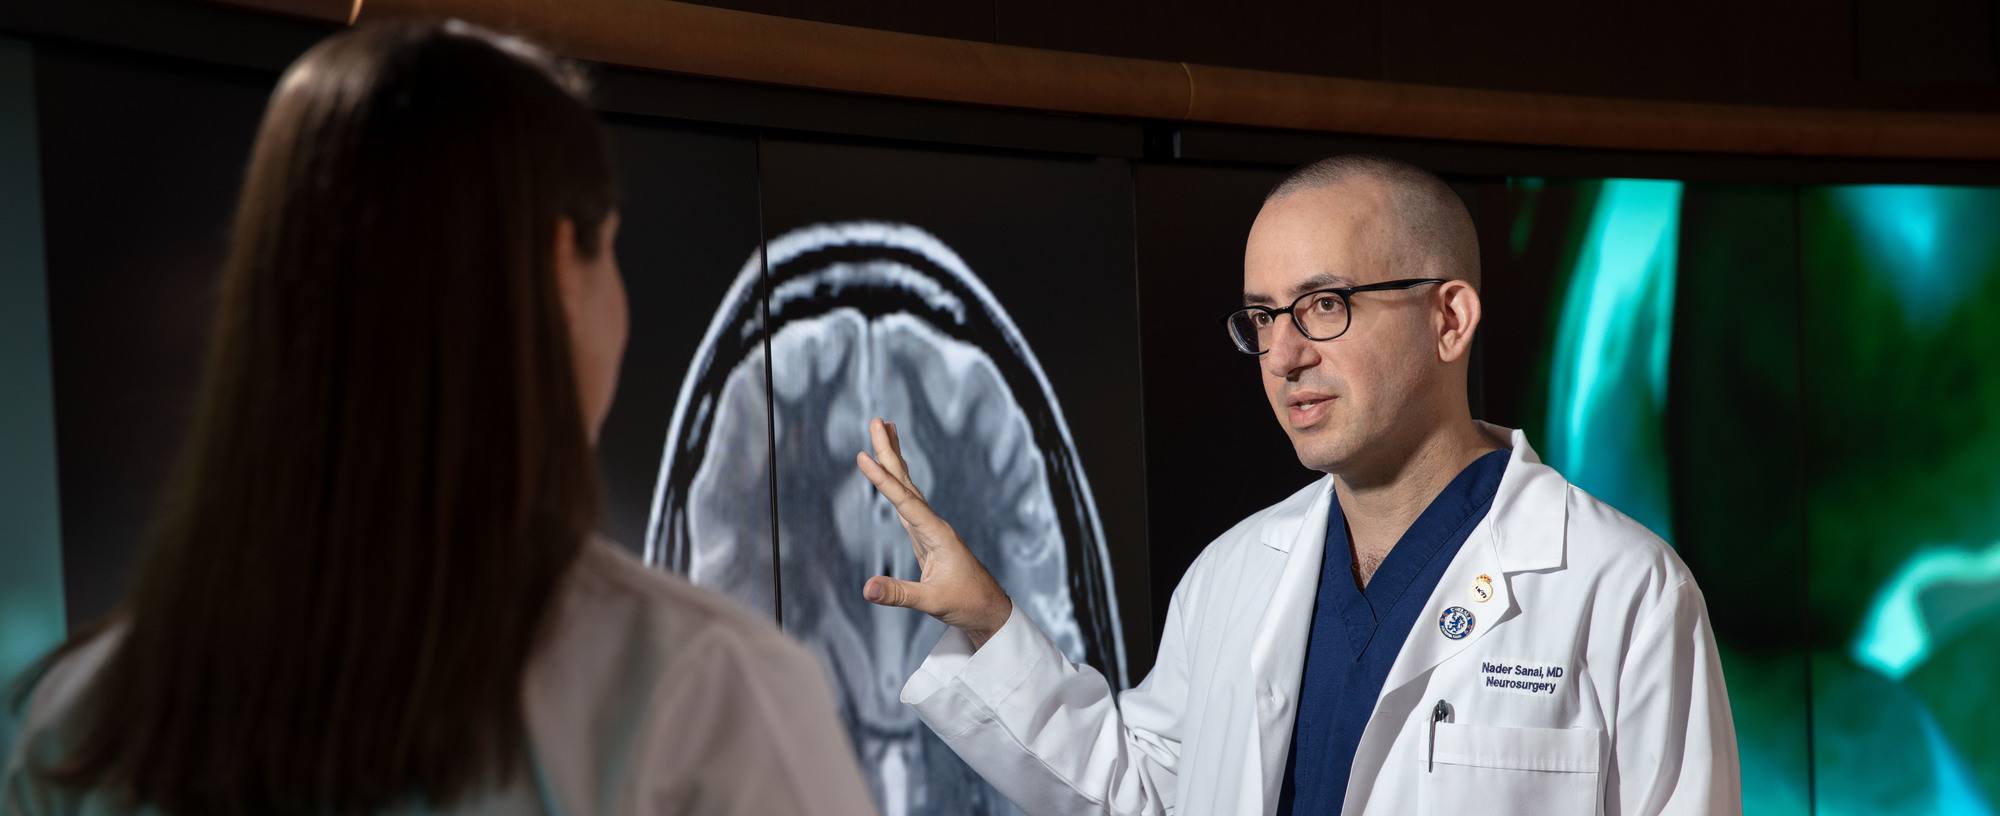 Dr. Sanai showing MRI scan